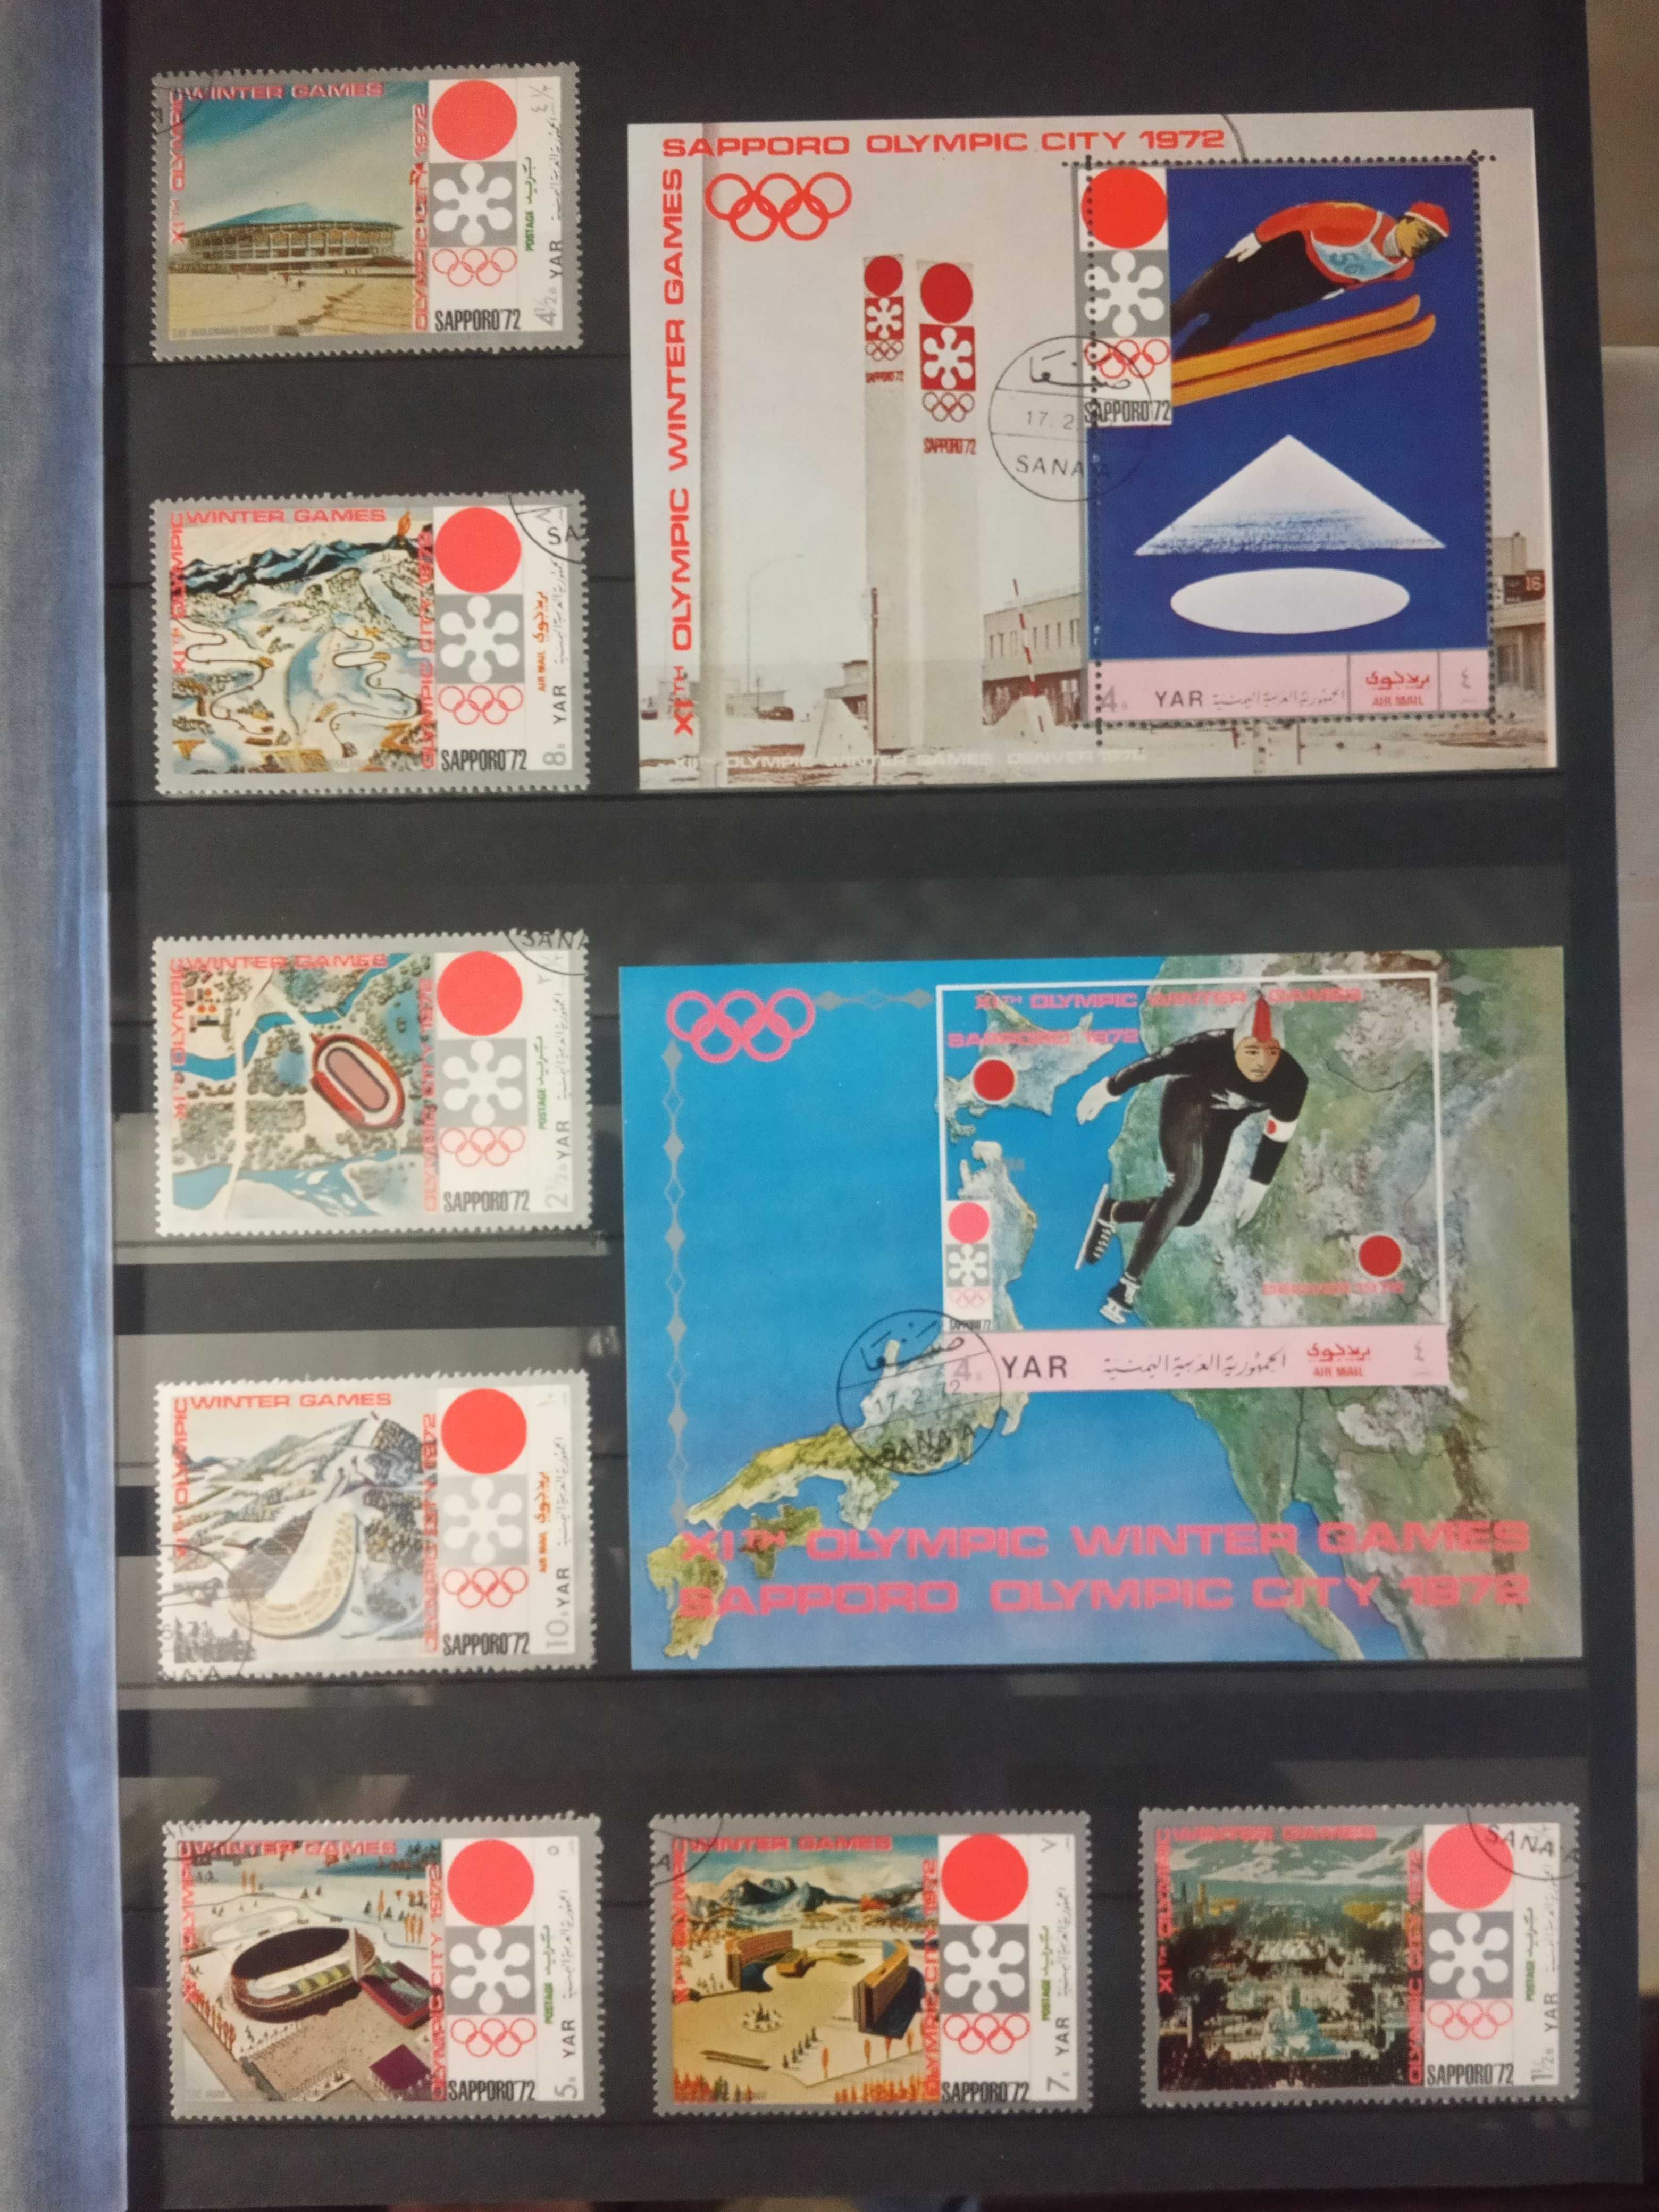 Серии марок и блоков тема "Спорт"